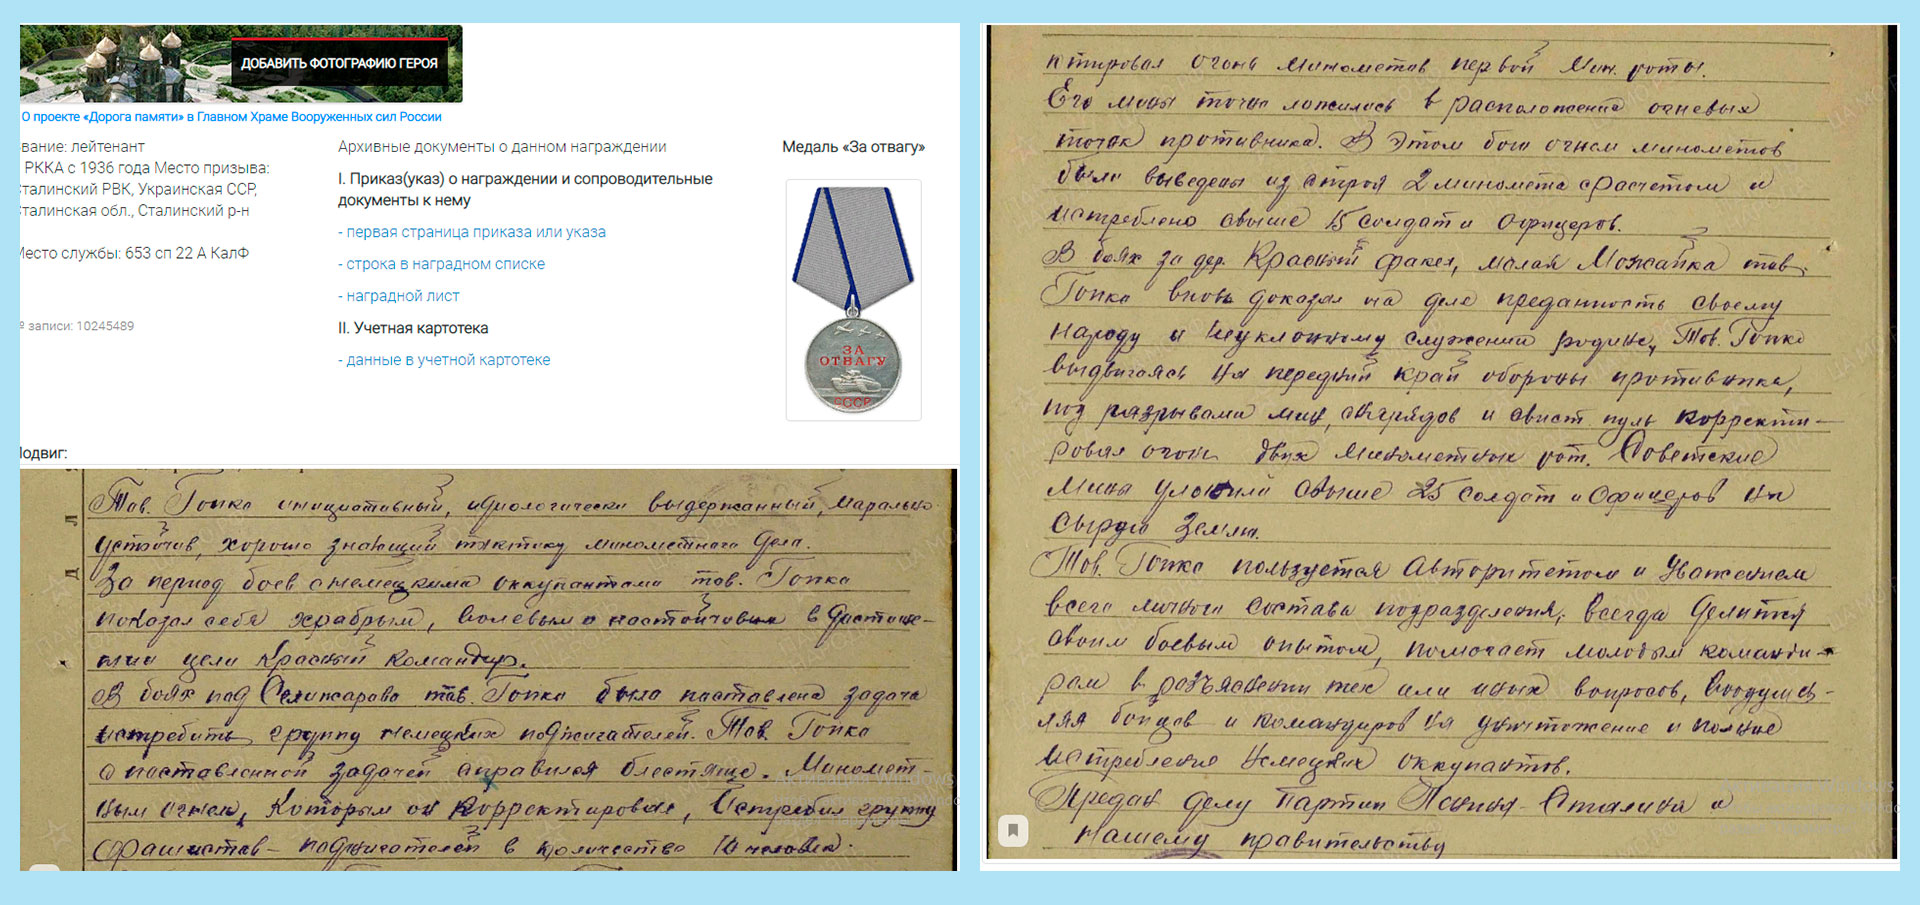 Станица сайта "Подвиг народа" о награждении лейтенанта Гопко Ф.Ф. медалью "За Отвагу"